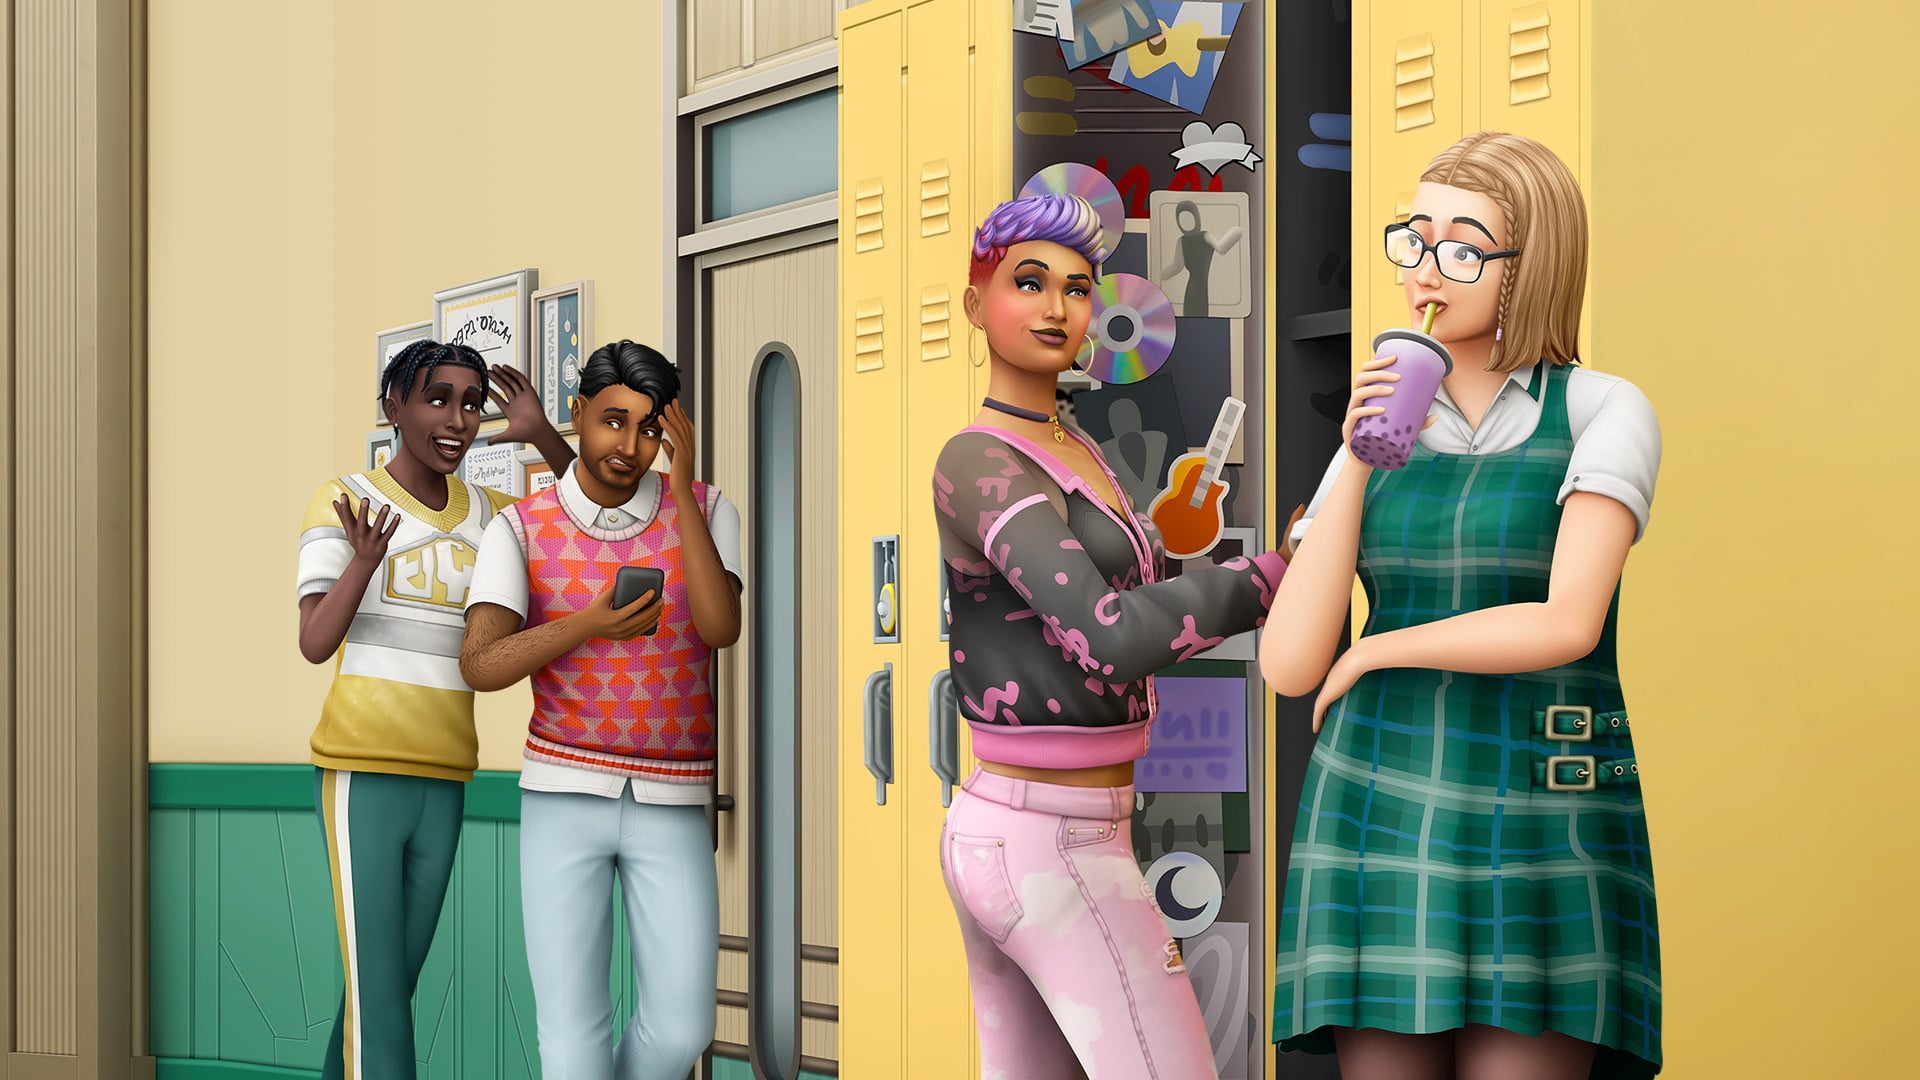 Busana virtual dari House of Blueberry diluncurkan di The Sims 4